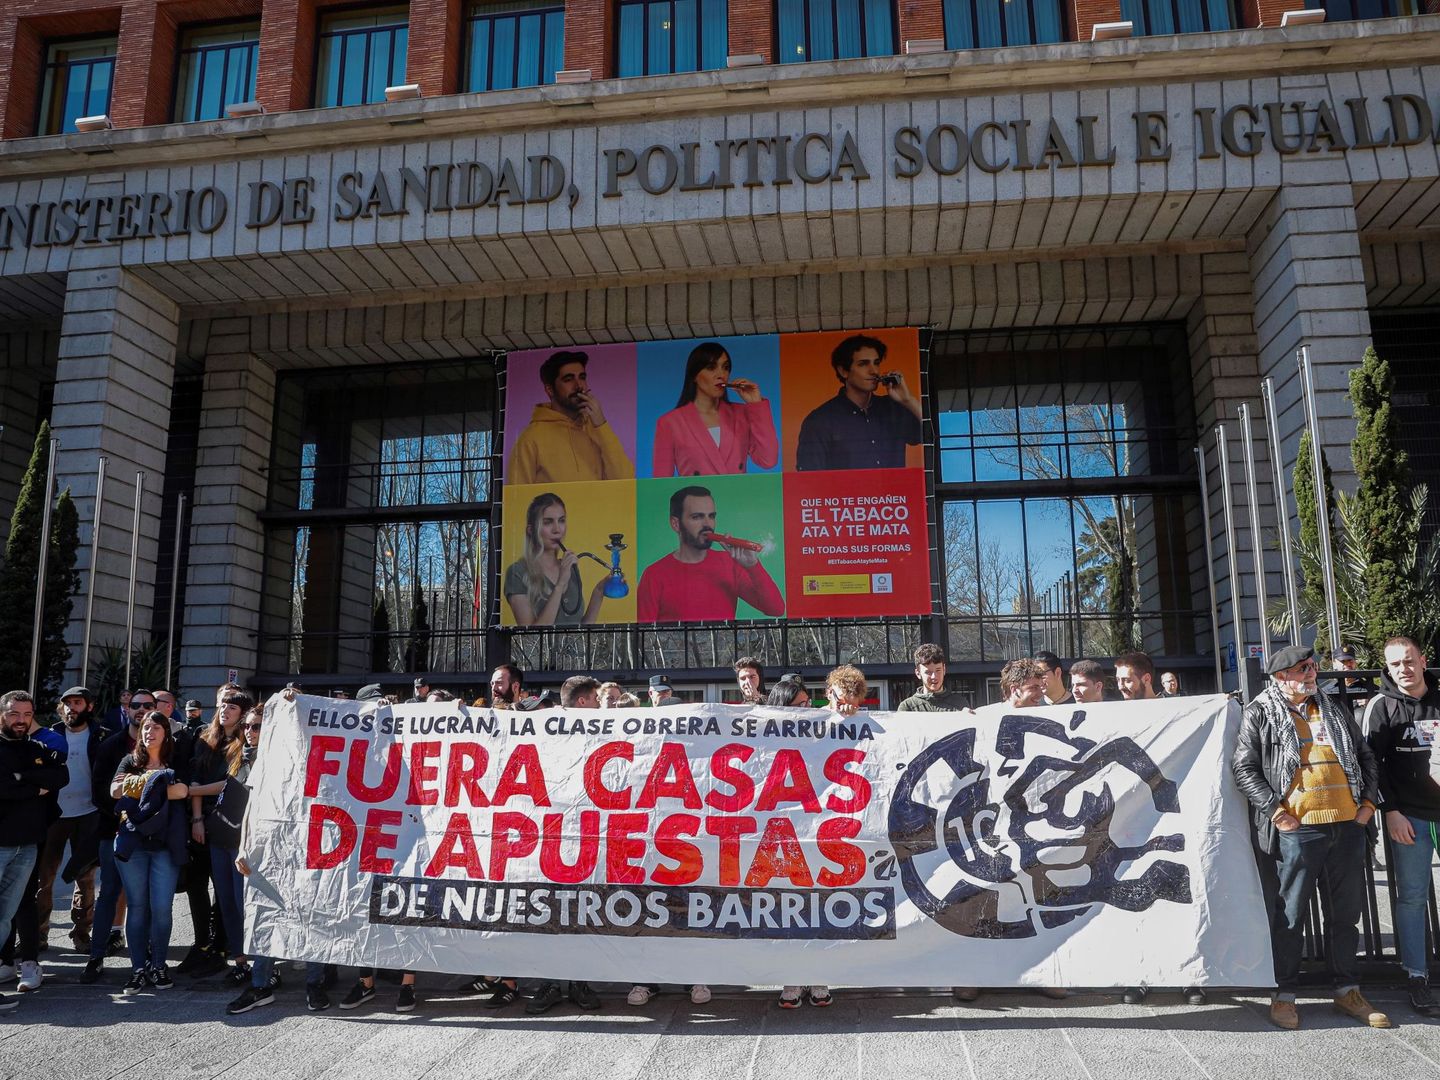 Protestas contra las casas de apuestas frente al Ministerio de Sanidad, Política Social e Igualdad en Madrid, sede de Consumo. (EFE)